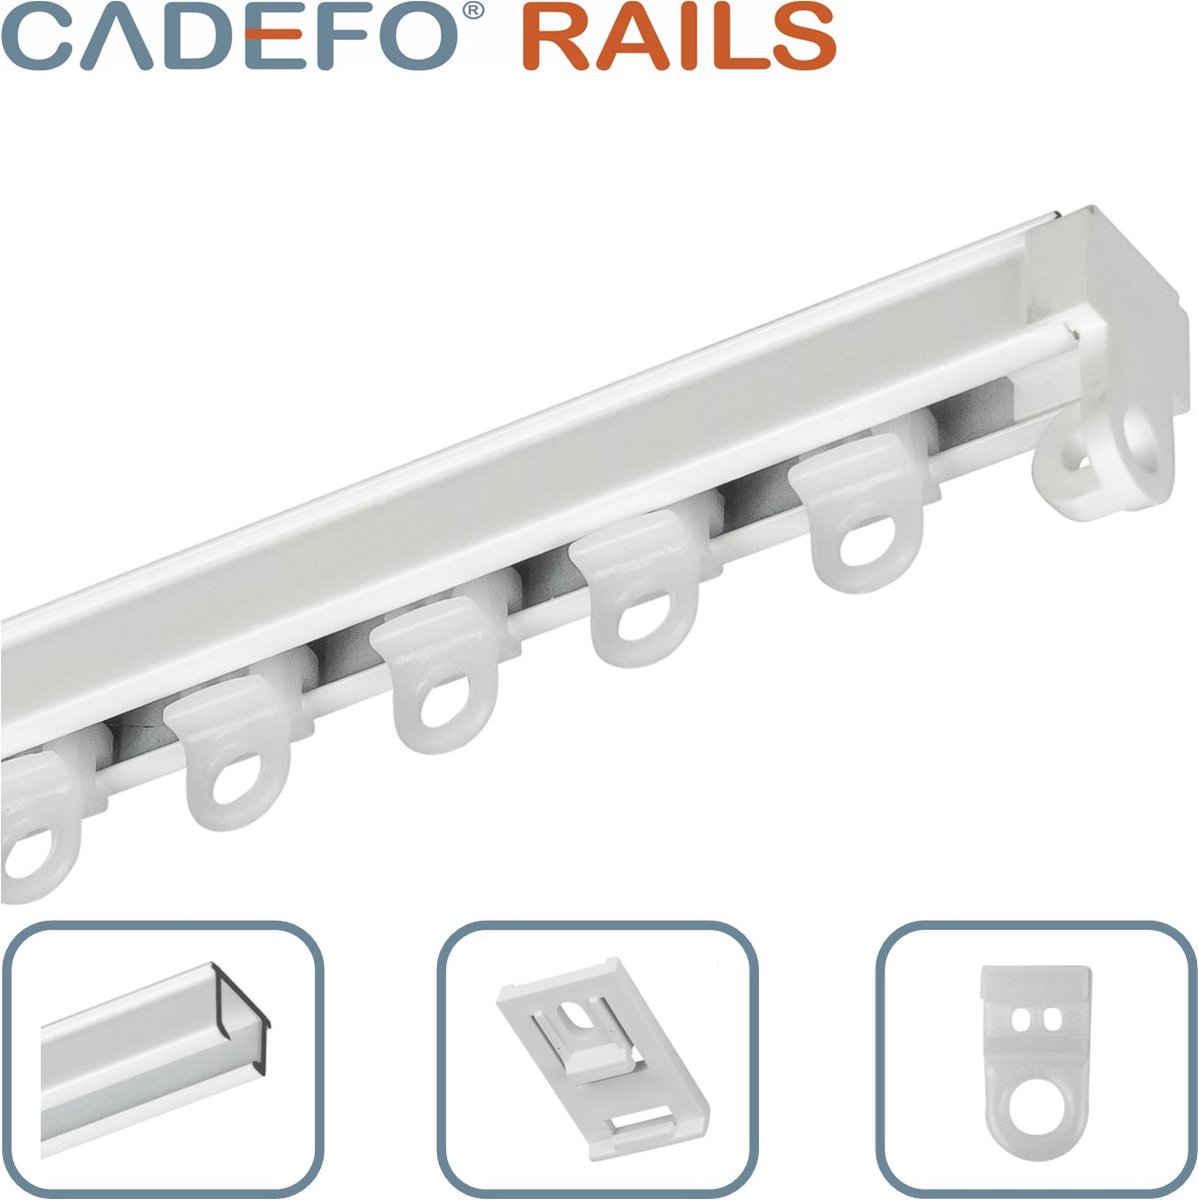 CADEFO RAILS (201 - 250 cm) Gordijnrails - Compleet op maat! - UIT 1 STUK - Leverbaar tot 6 meter - Plafondbevestiging - Lengte 203 cm